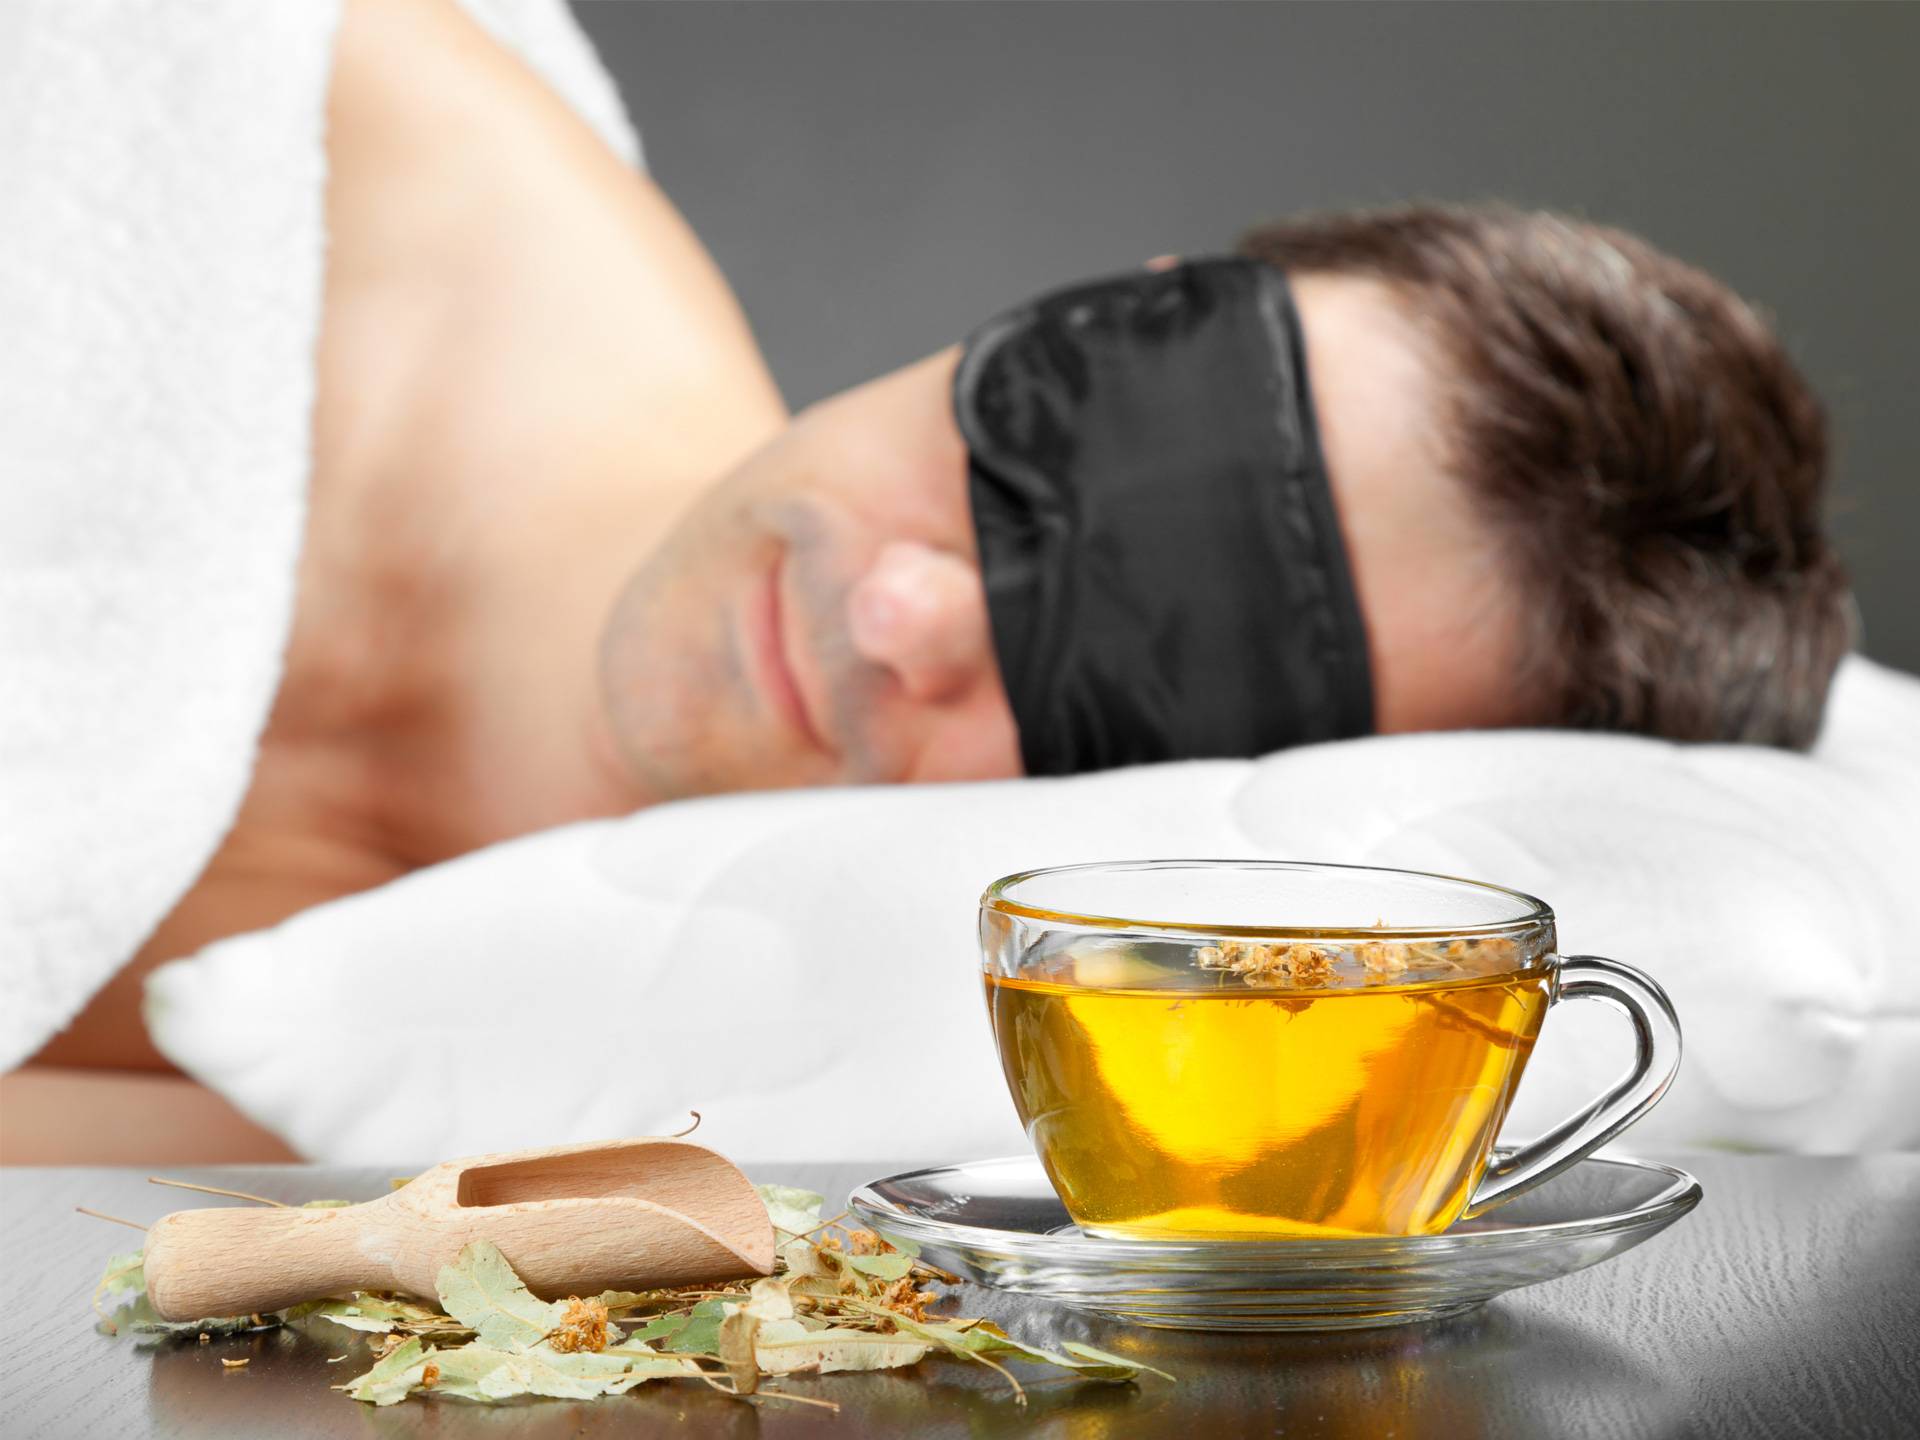 5 сортов чая, которые полезно пить перед сном / эти напитки помогут расслабиться – статья из рубрики "что съесть" на food.ru